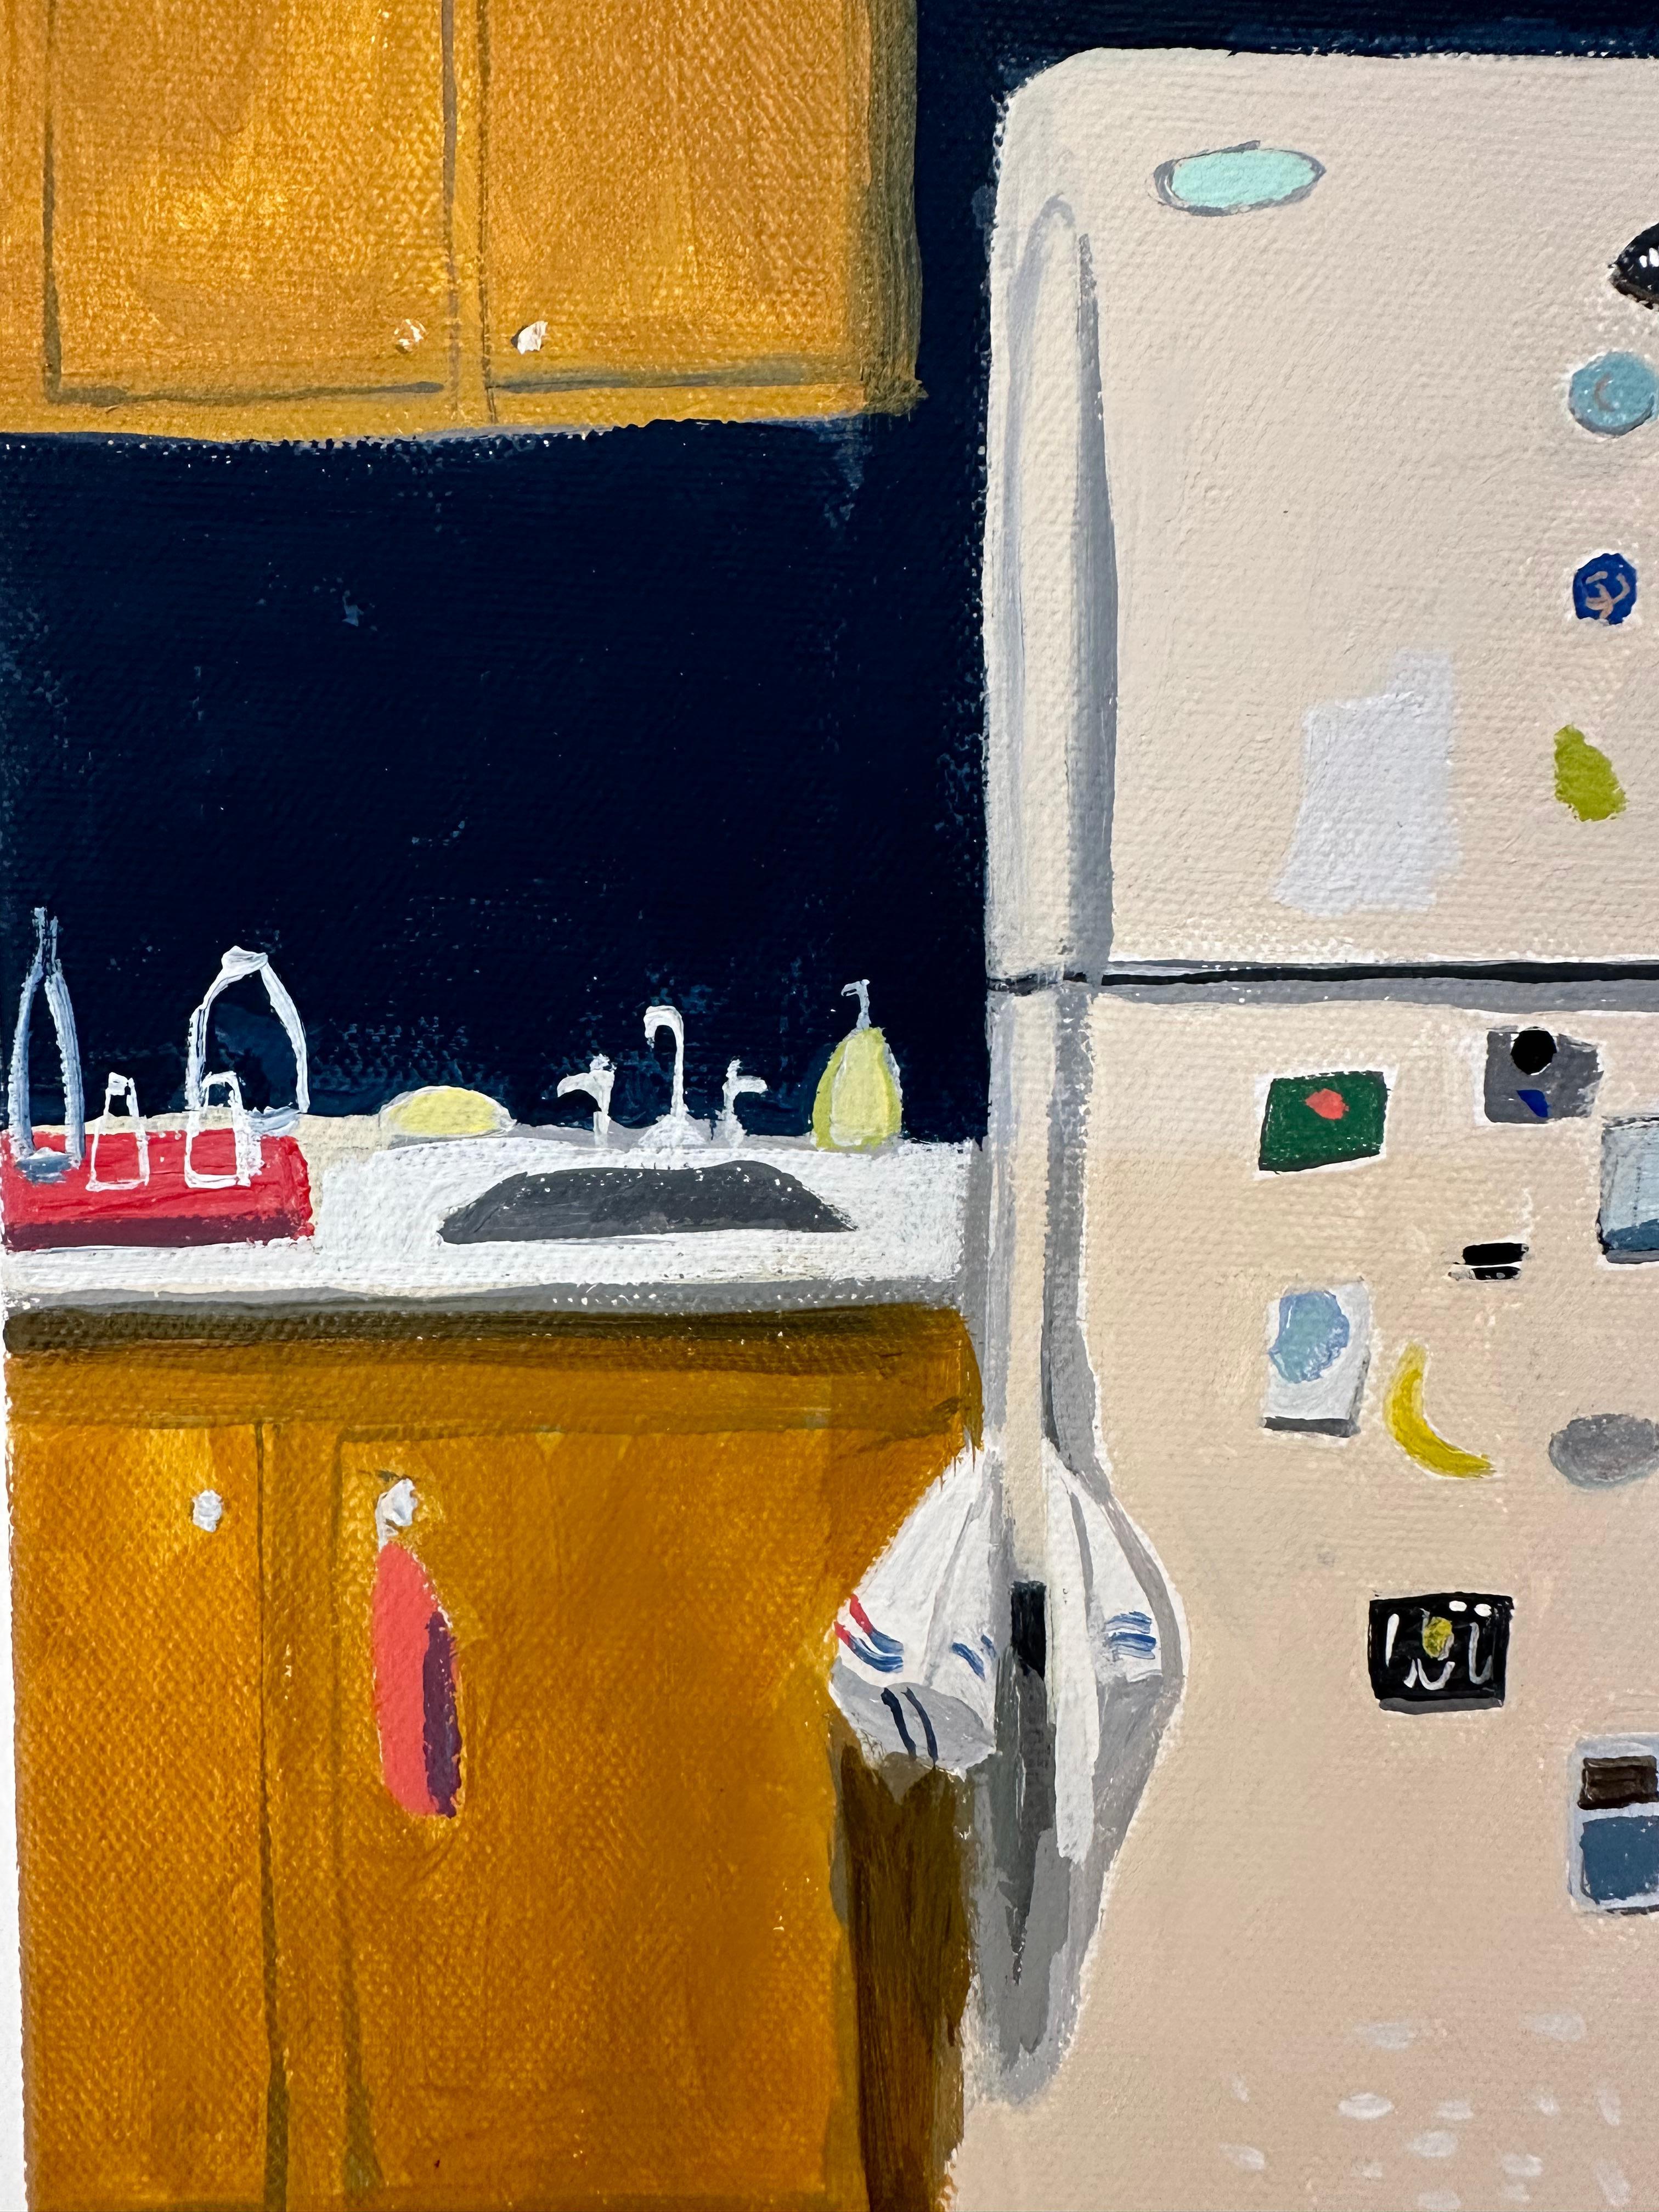 Ein Kühlschrank mit verschiedenen Magneten steht neben einer Mikrowelle, einem Toaster und einem Mixer, umgeben von Holzschränken in einer Küche mit blauem und elfenbeinfarbenem Kachelboden.

In ihrer Arbeit denkt Polly Shindler stets über die